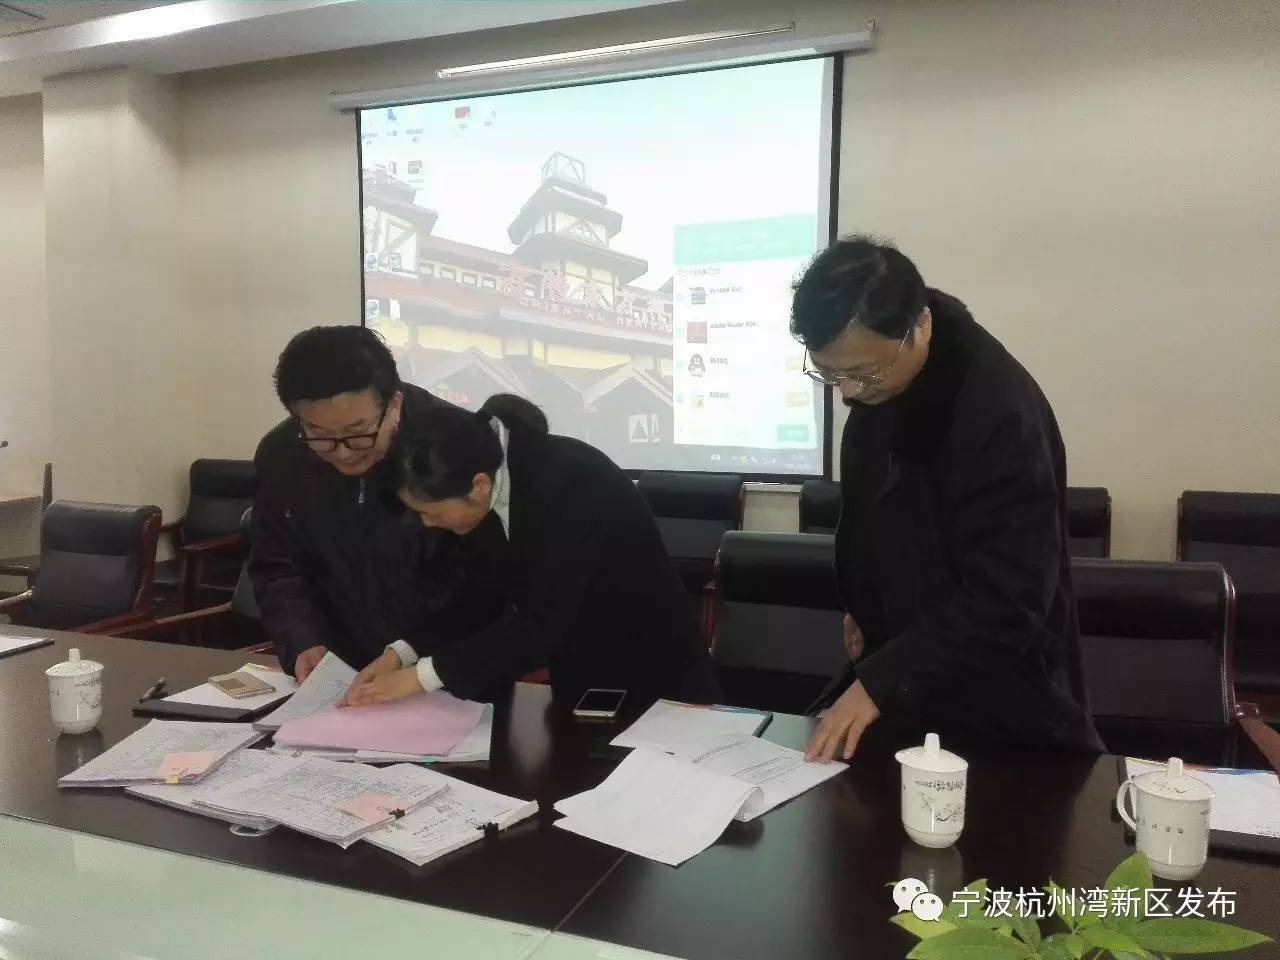 其它 正文 1月30日上午,宁波杭州湾新区管委会副主任胡守治带领办公室